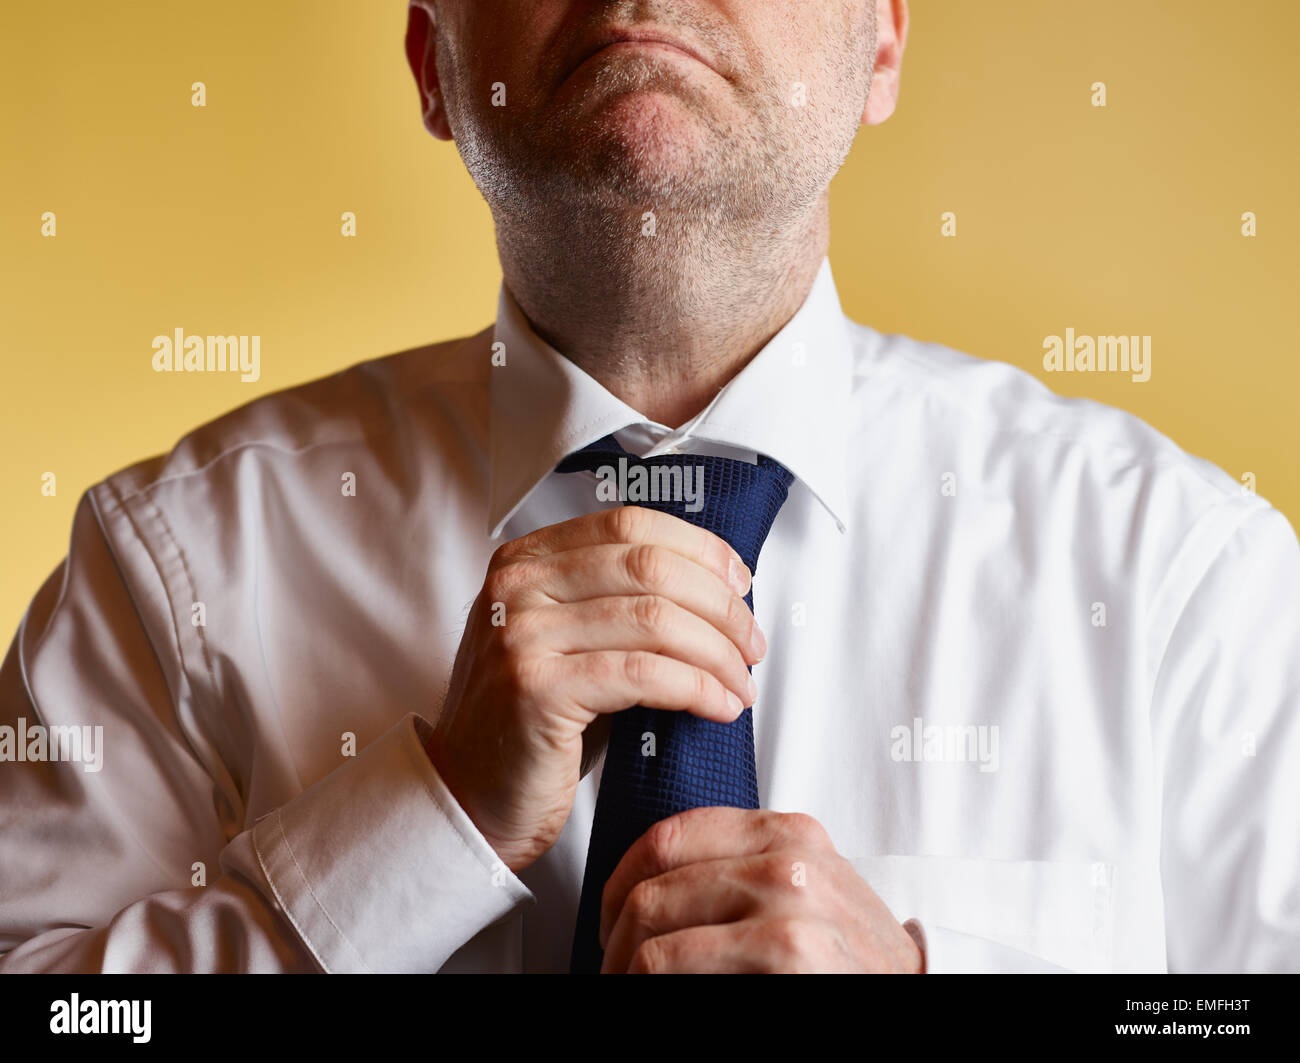 Close up, homme portant chemise blanche et cravate bleue, il serrer le nœud de cravate, fond jaune Banque D'Images